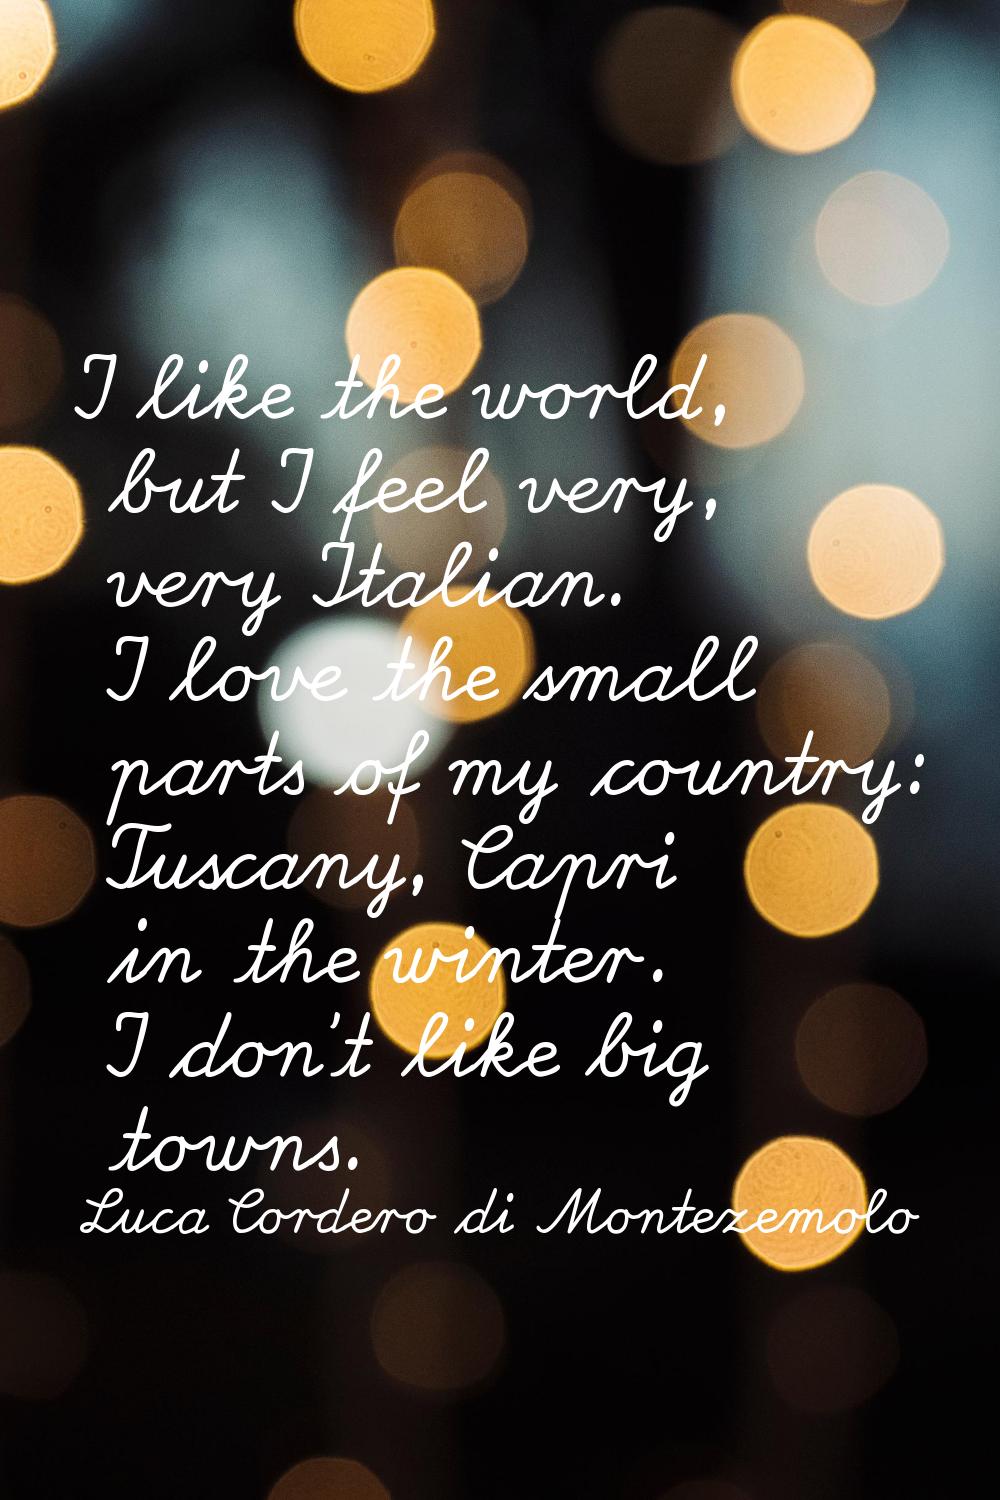 I like the world, but I feel very, very Italian. I love the small parts of my country: Tuscany, Cap